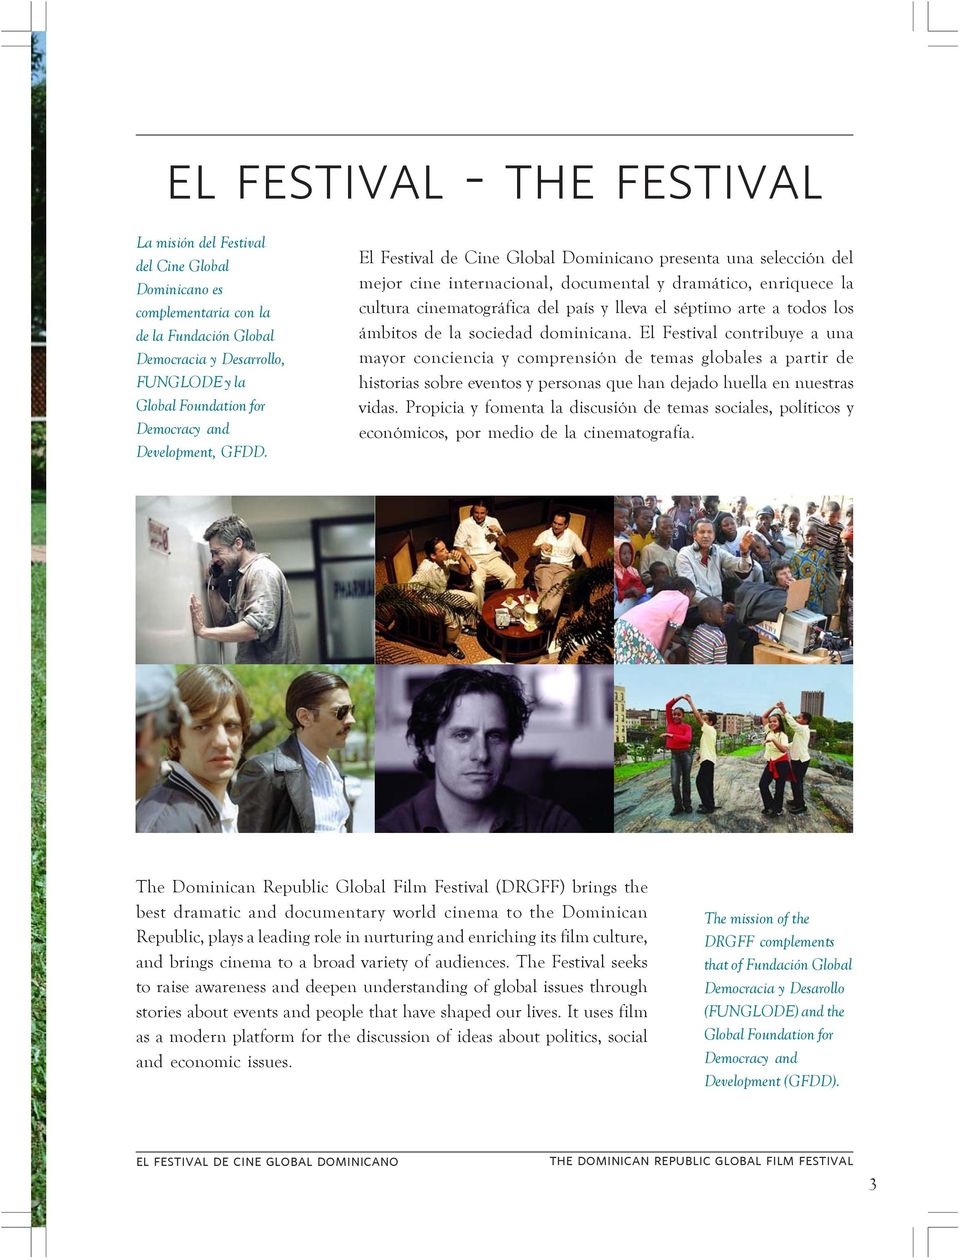 El Festival de Cine Global Dominicano presenta una selección del mejor cine internacional, documental y dramático, enriquece la cultura cinematográfica del país y lleva el séptimo arte a todos los